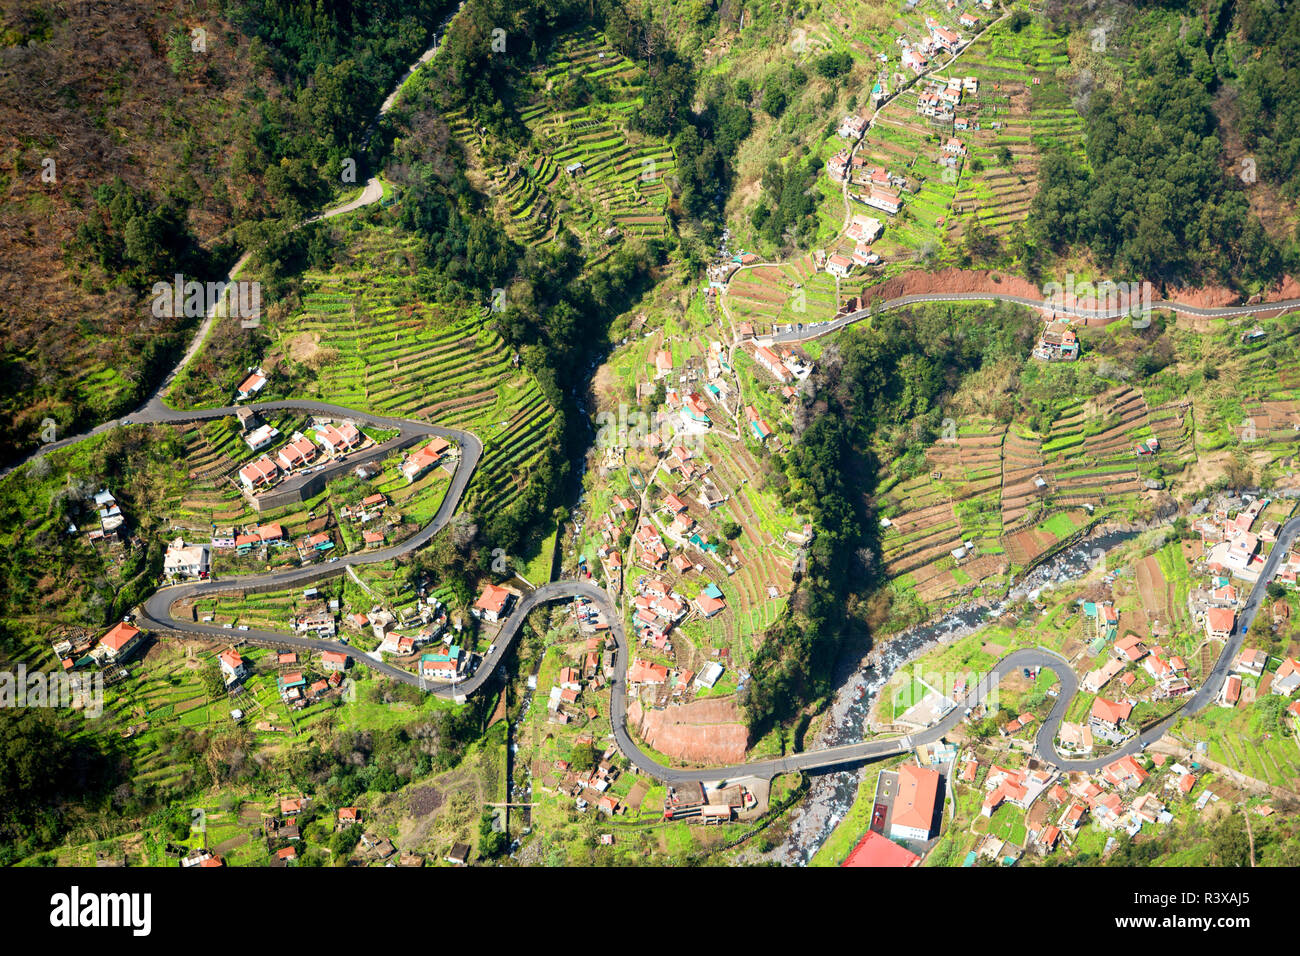 Les champs en terrasses de Curral das Freiras village dans la vallée des nonnes, Madeira, Portugal Banque D'Images